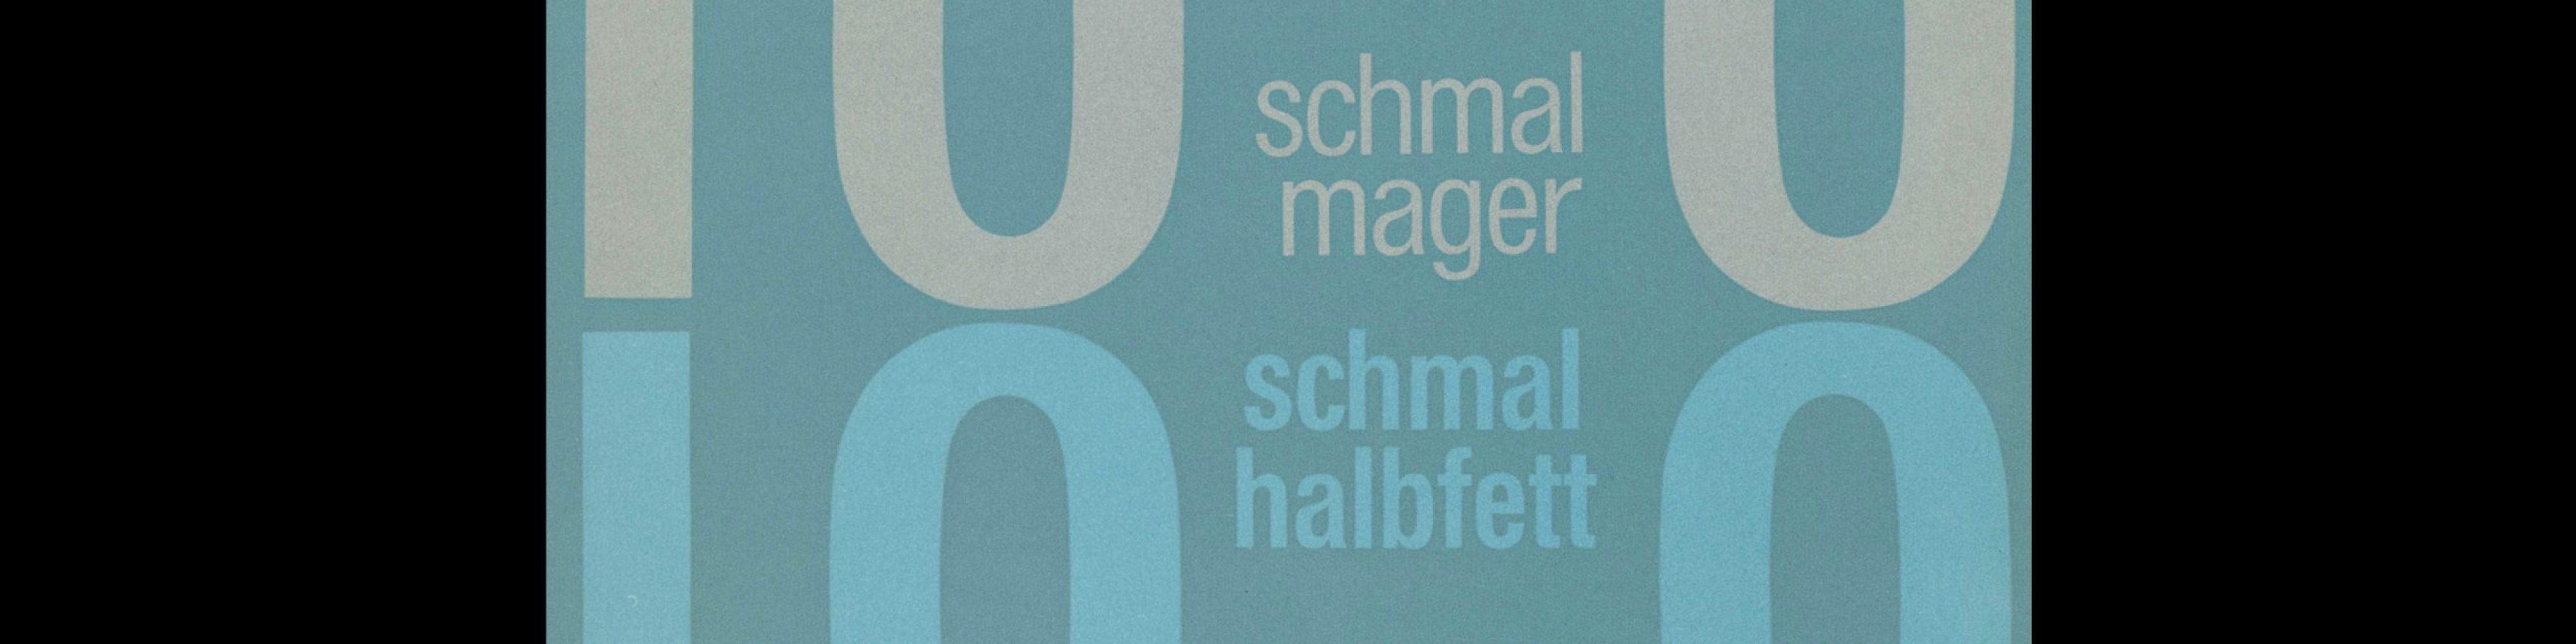 Folio schmalmager, schmal fett, Bauersche Giesserei, Frankfurt am Main, Type Specimen with Samples